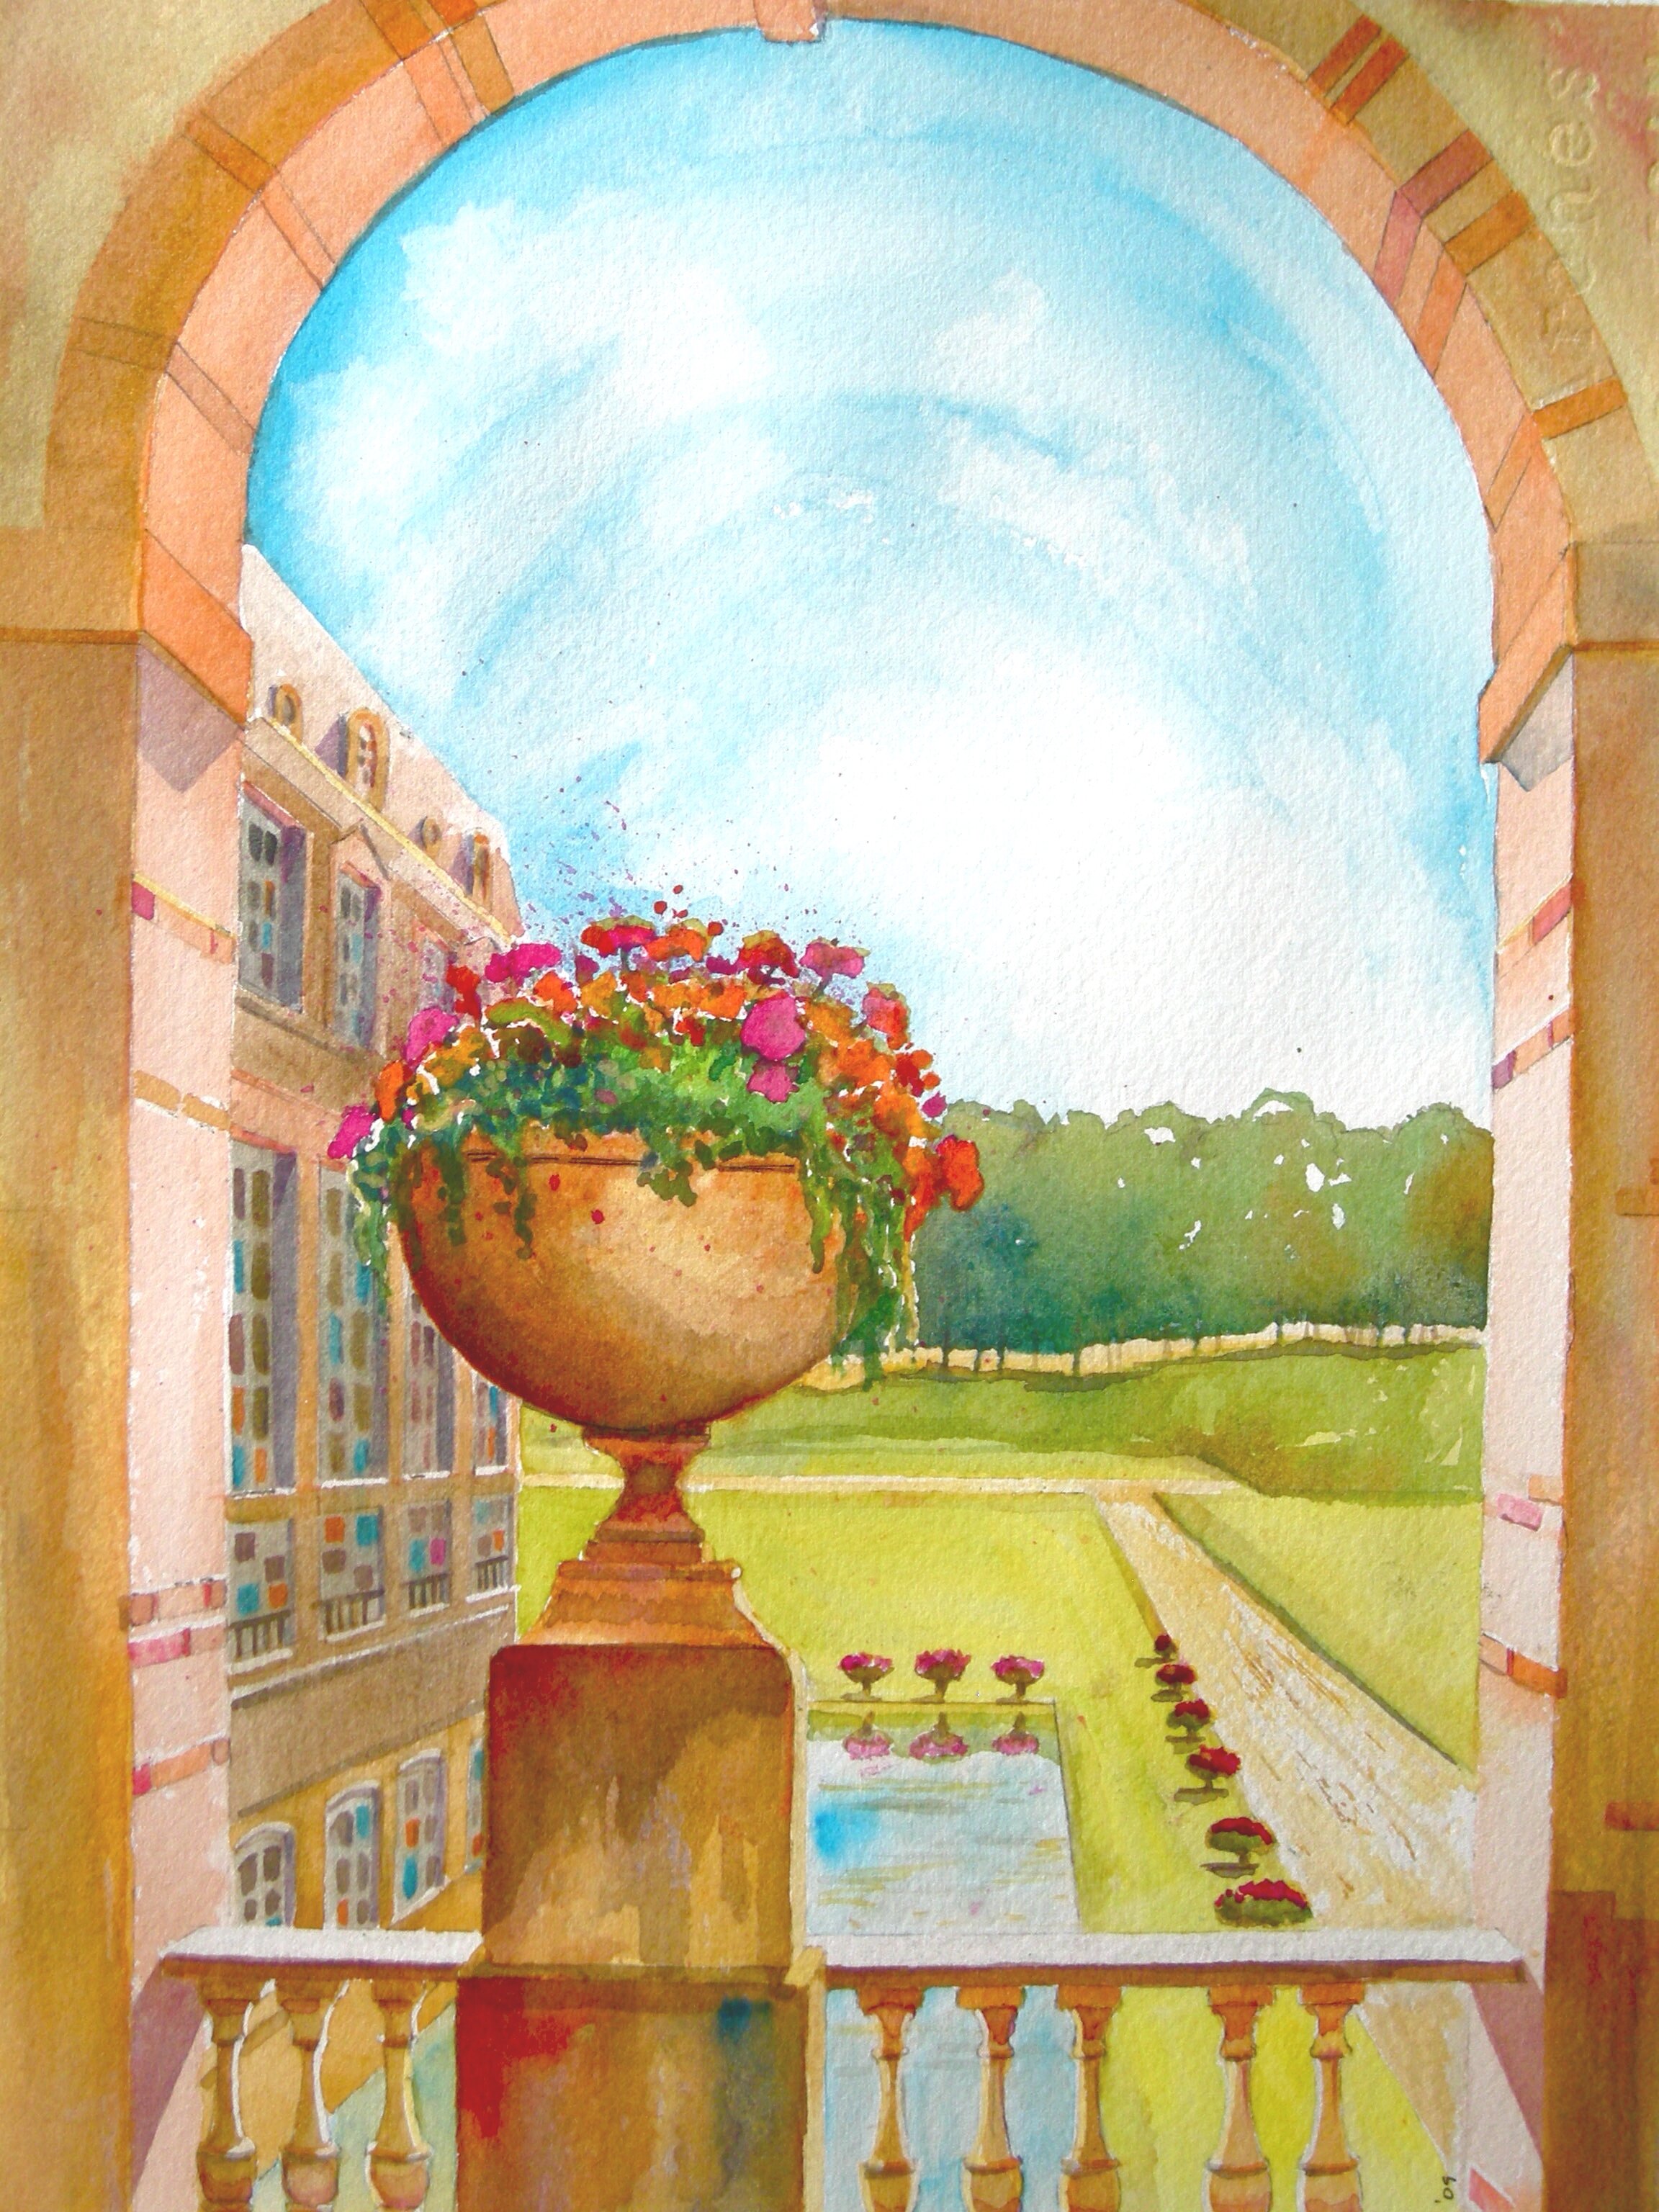 Chateau Flowers - Watercolor 38cmx26cm €480